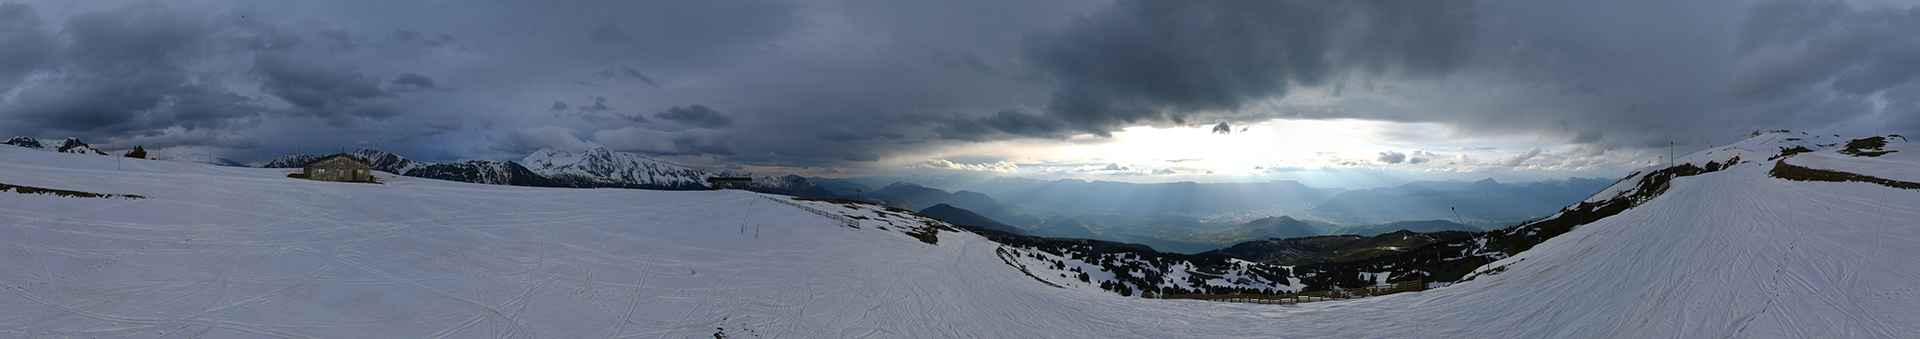 Chamrousse webcam sky cloud may 2021 ski resort mountain grenoble isere french alps france - © Skaping